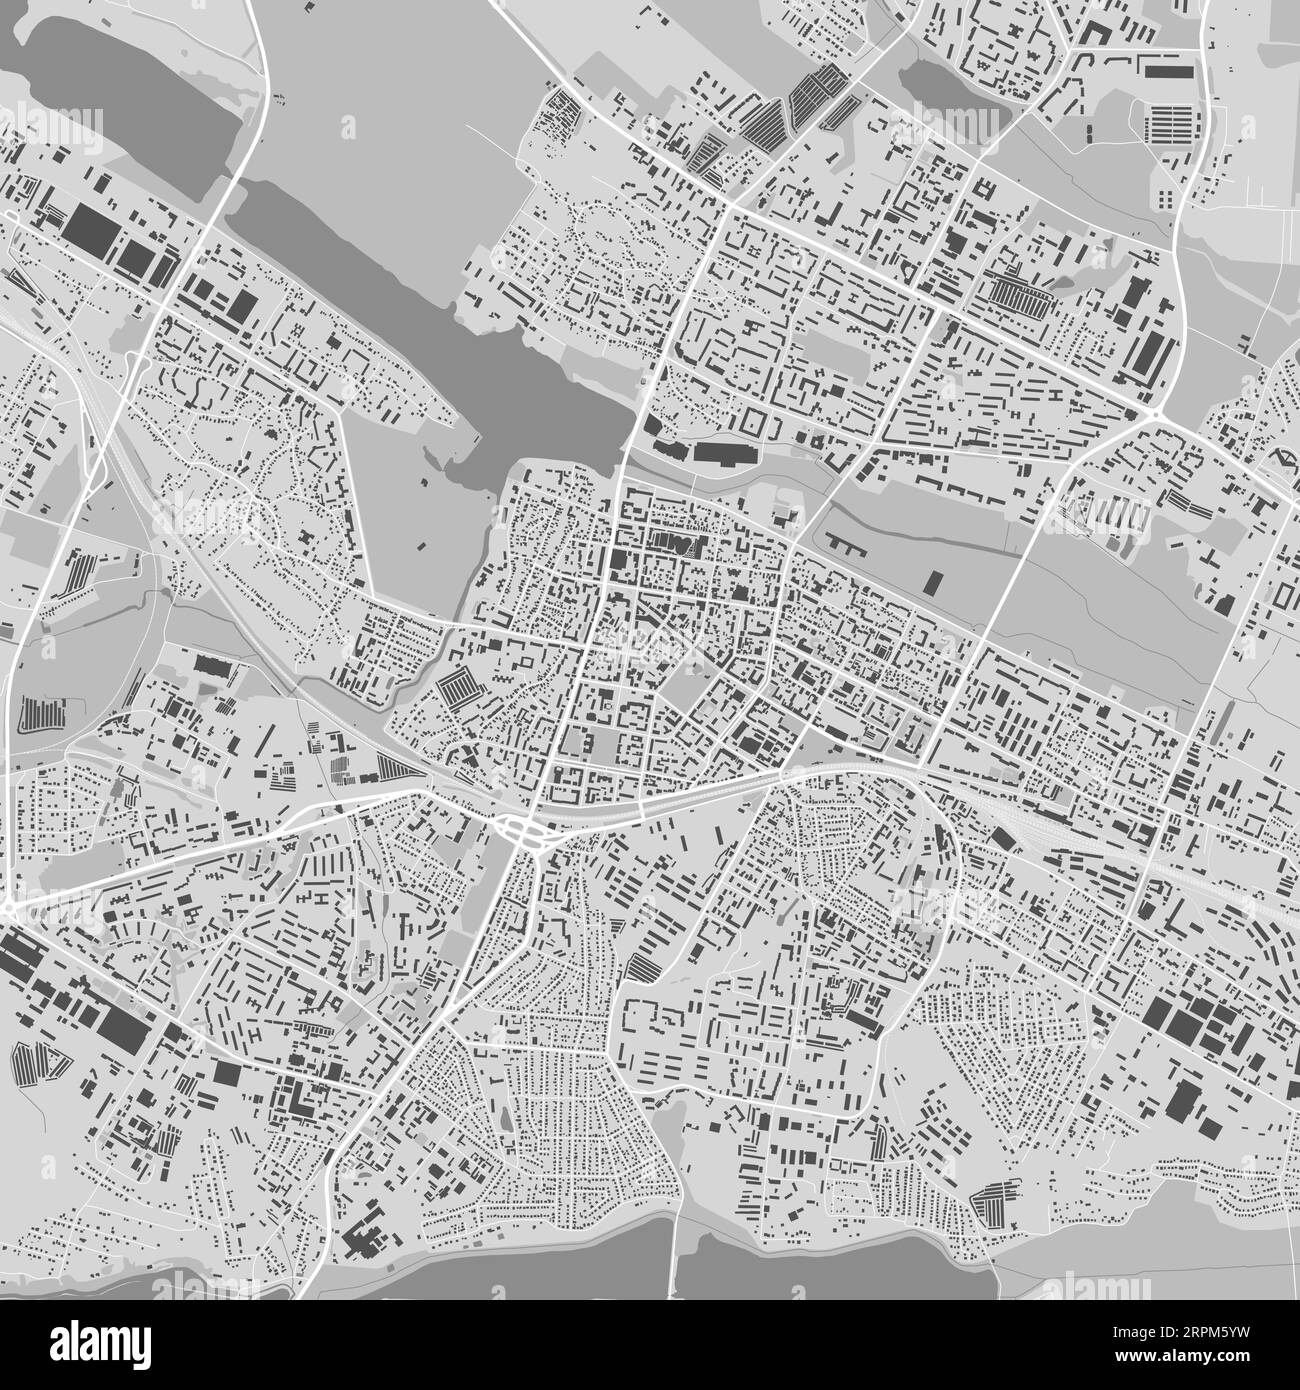 Carte de Khmelnytskyi ville, Ukraine. Affiche urbaine en noir et blanc. Image de la carte routière avec vue de la zone urbaine. Illustration de Vecteur